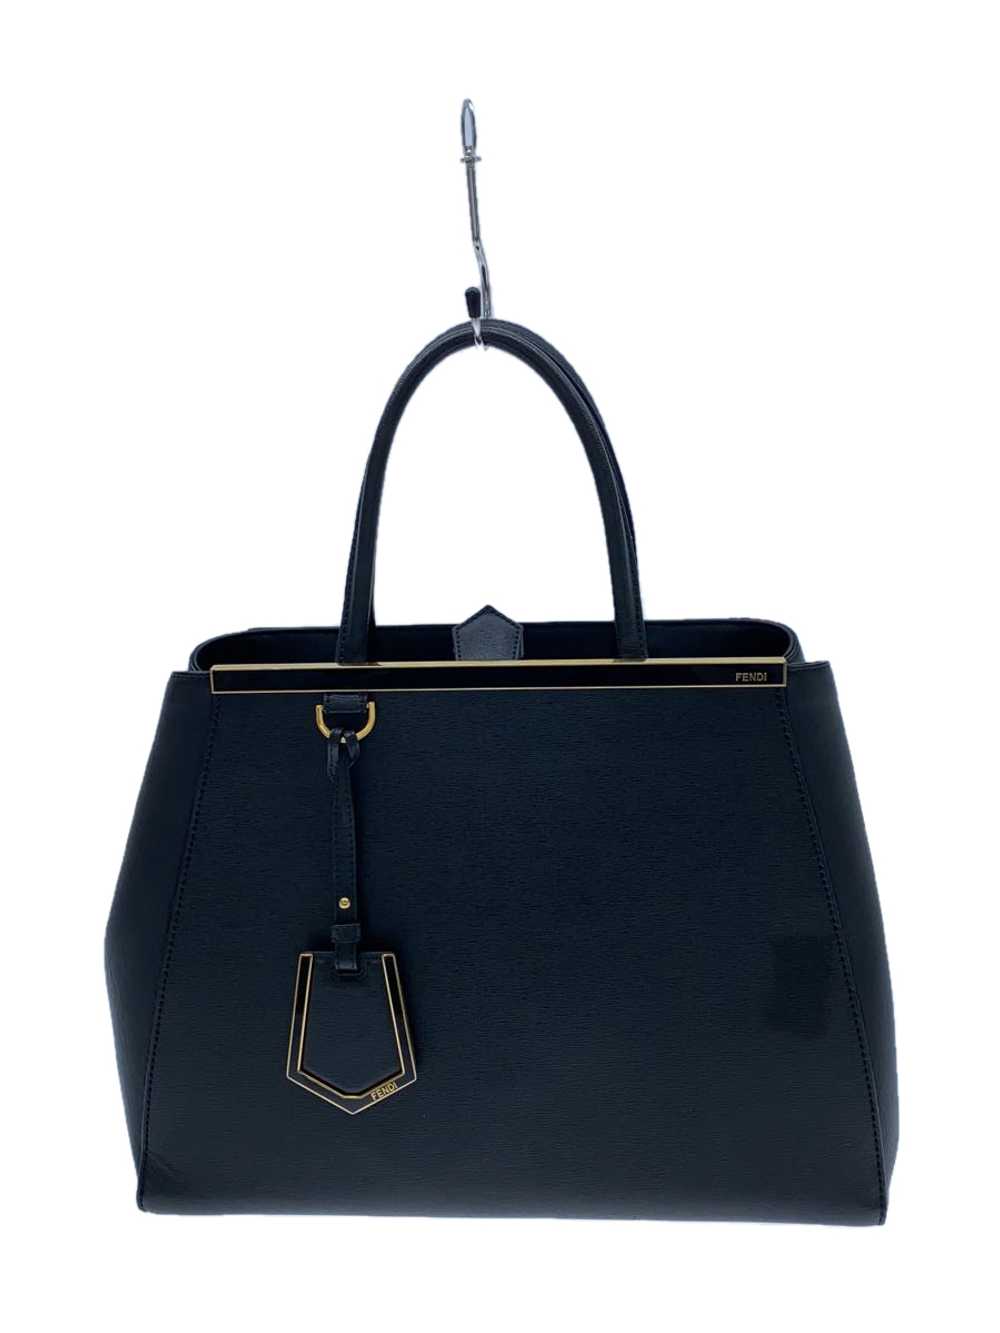 Fendi Shoulder Bag Leather Blk Plain Petite 2Jour… - image 1